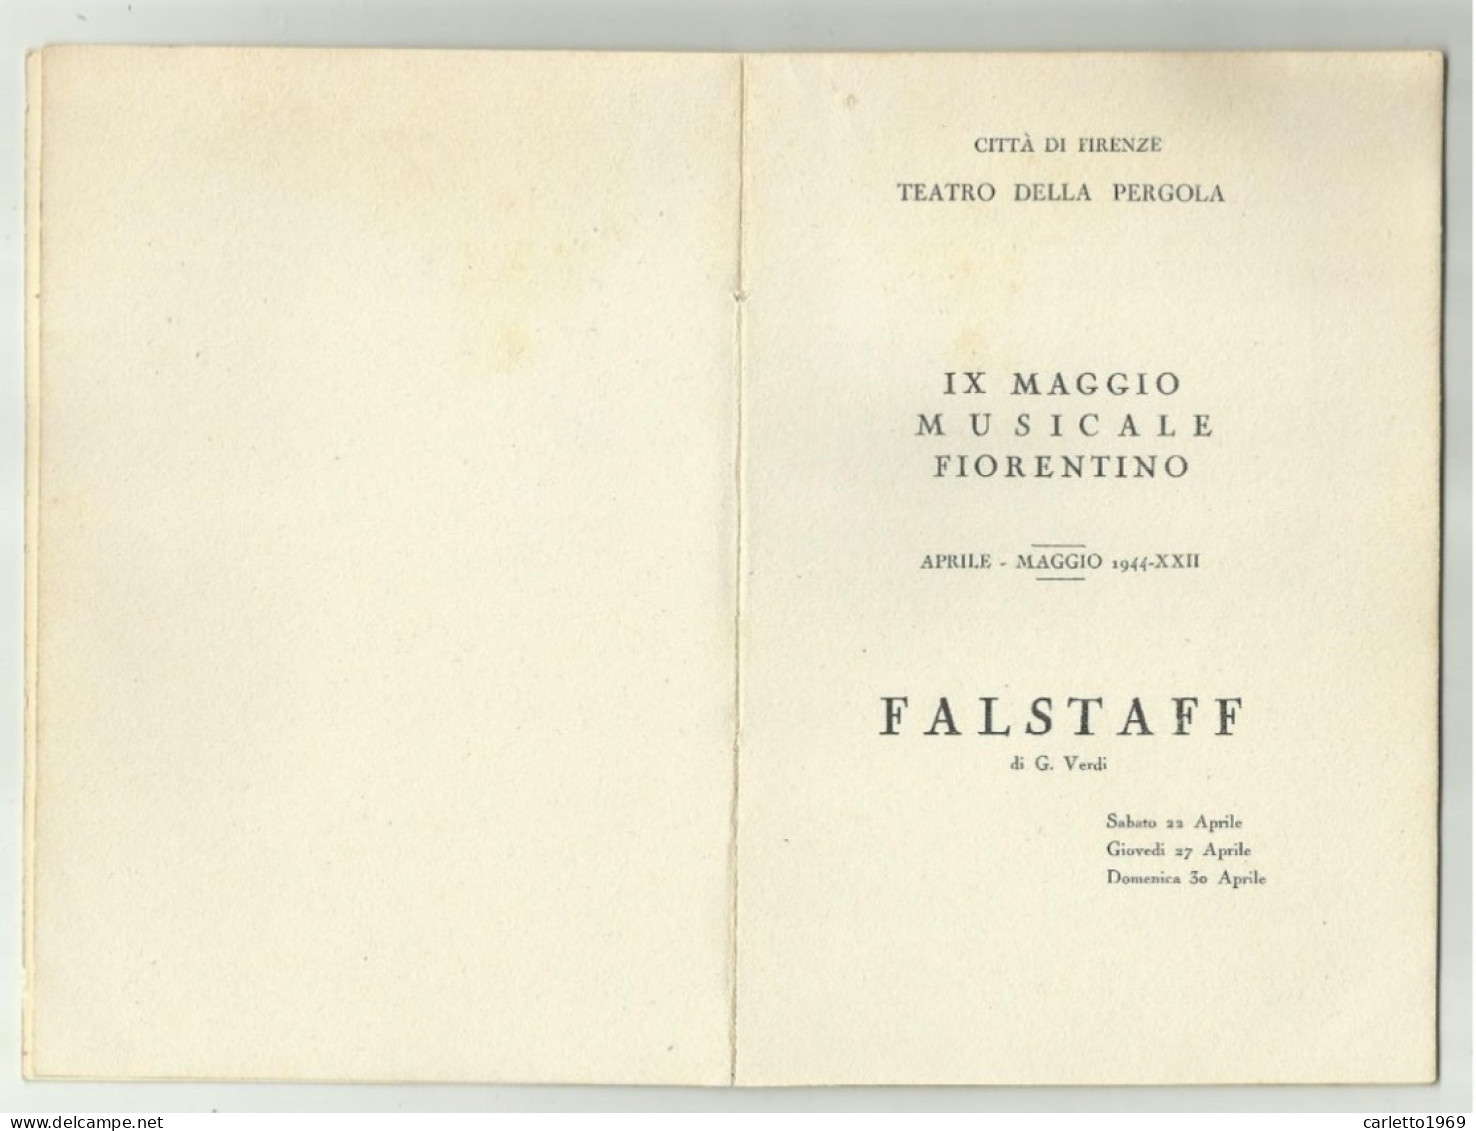 IX MAGGIO MUSICALE FIORENTINO 1944 LIBRETTO CITTA' DI FIRENZE CON TAGLIANDO POSTO POLTRONA 21 - Concert Tickets